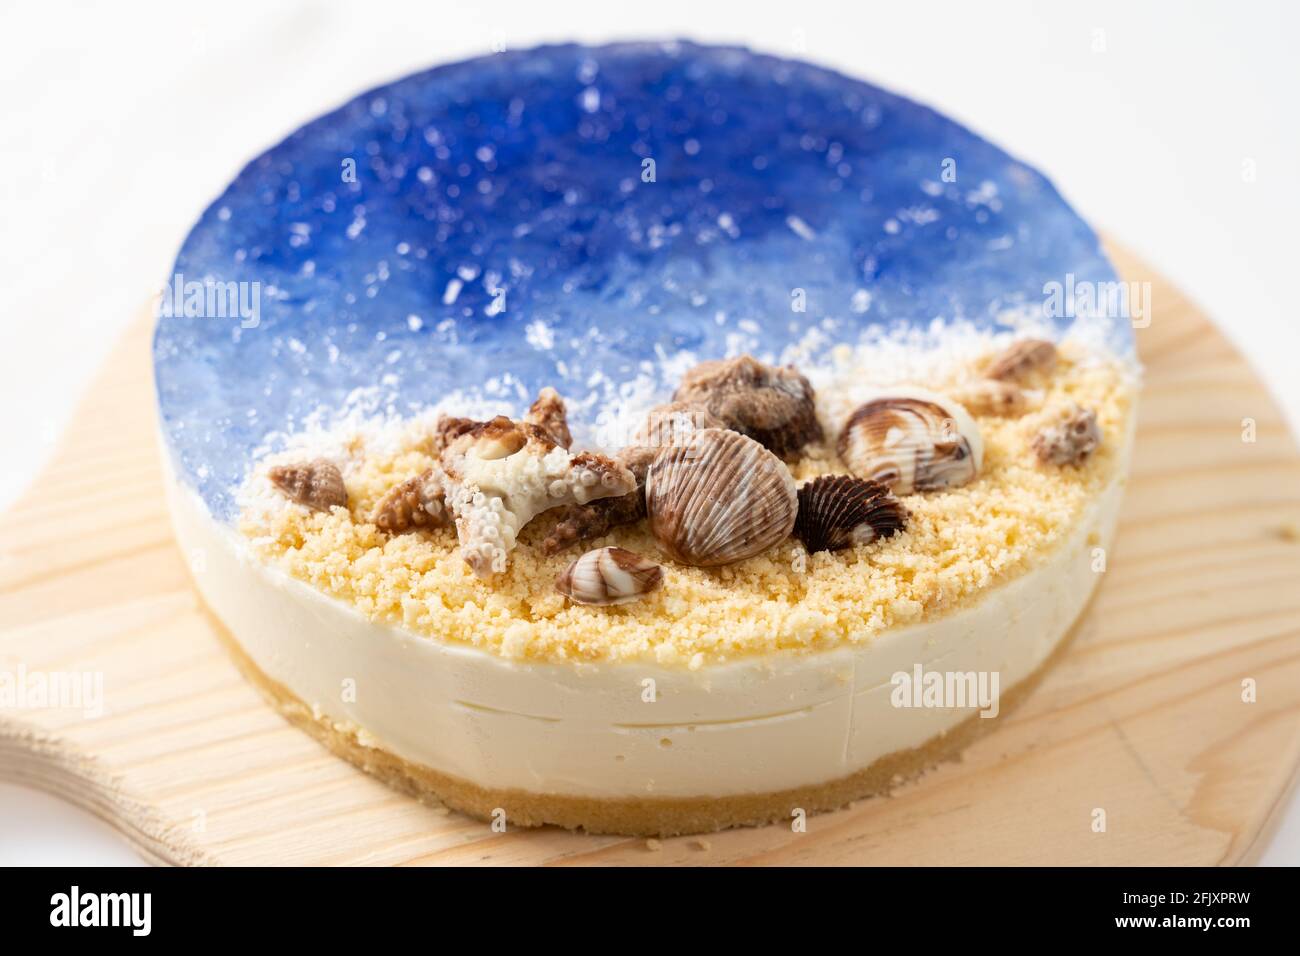 Non c'e' una torta al formaggio blu dell'oceano con decorazioni a ciambelle di cioccolato Foto Stock